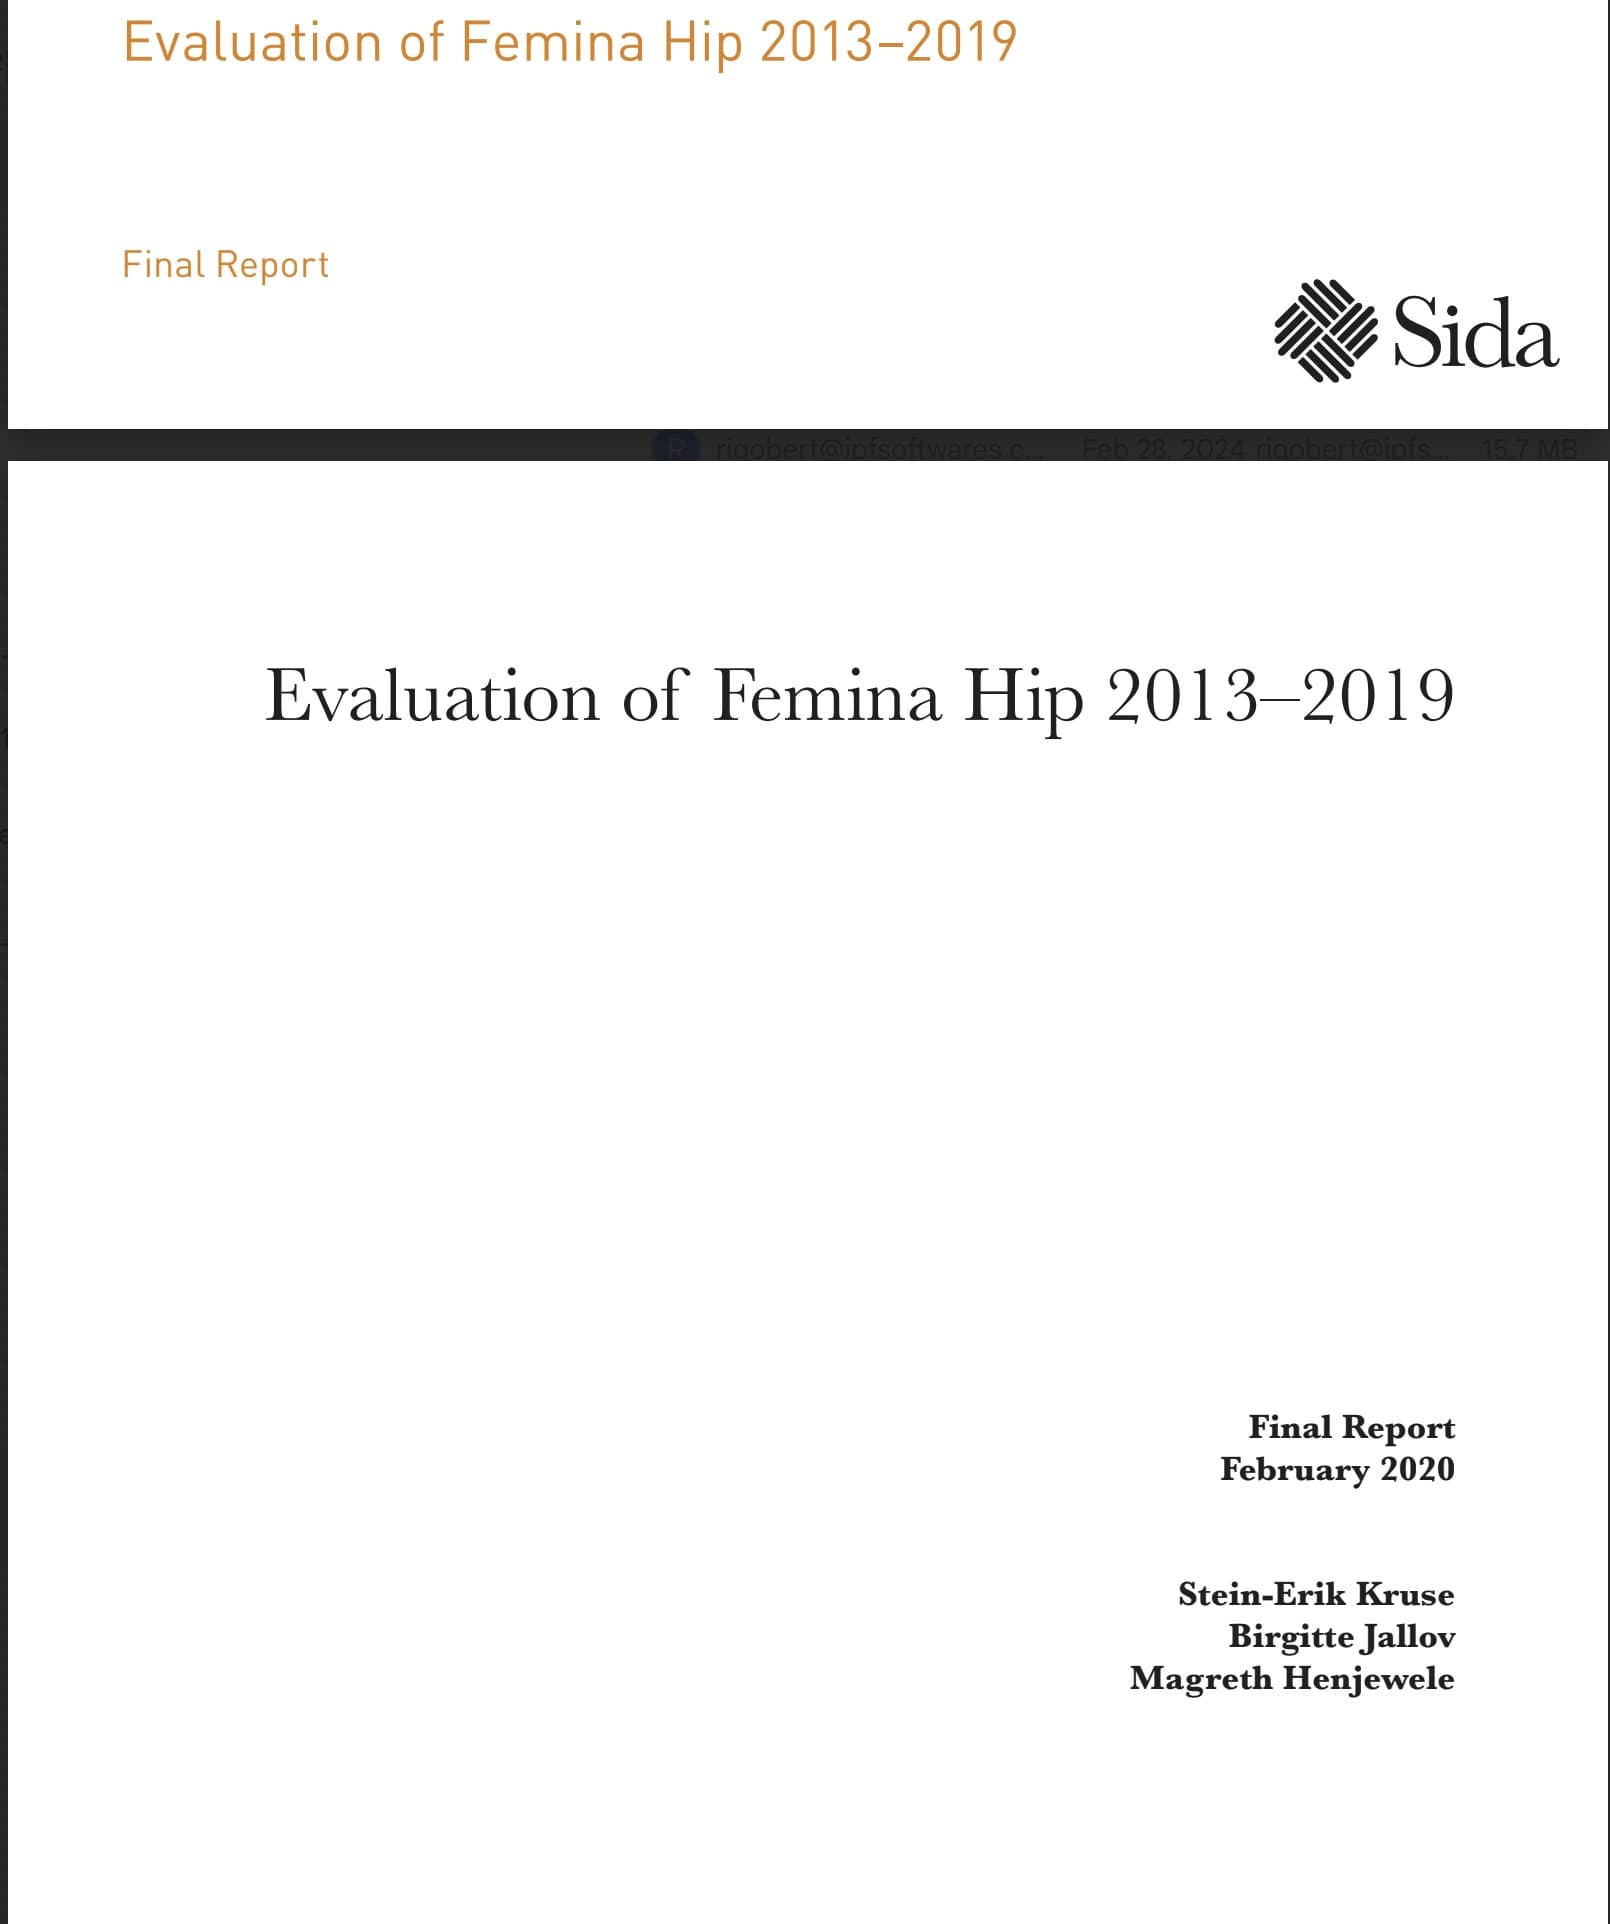 SIDA Femina Evaluation 2013-2019